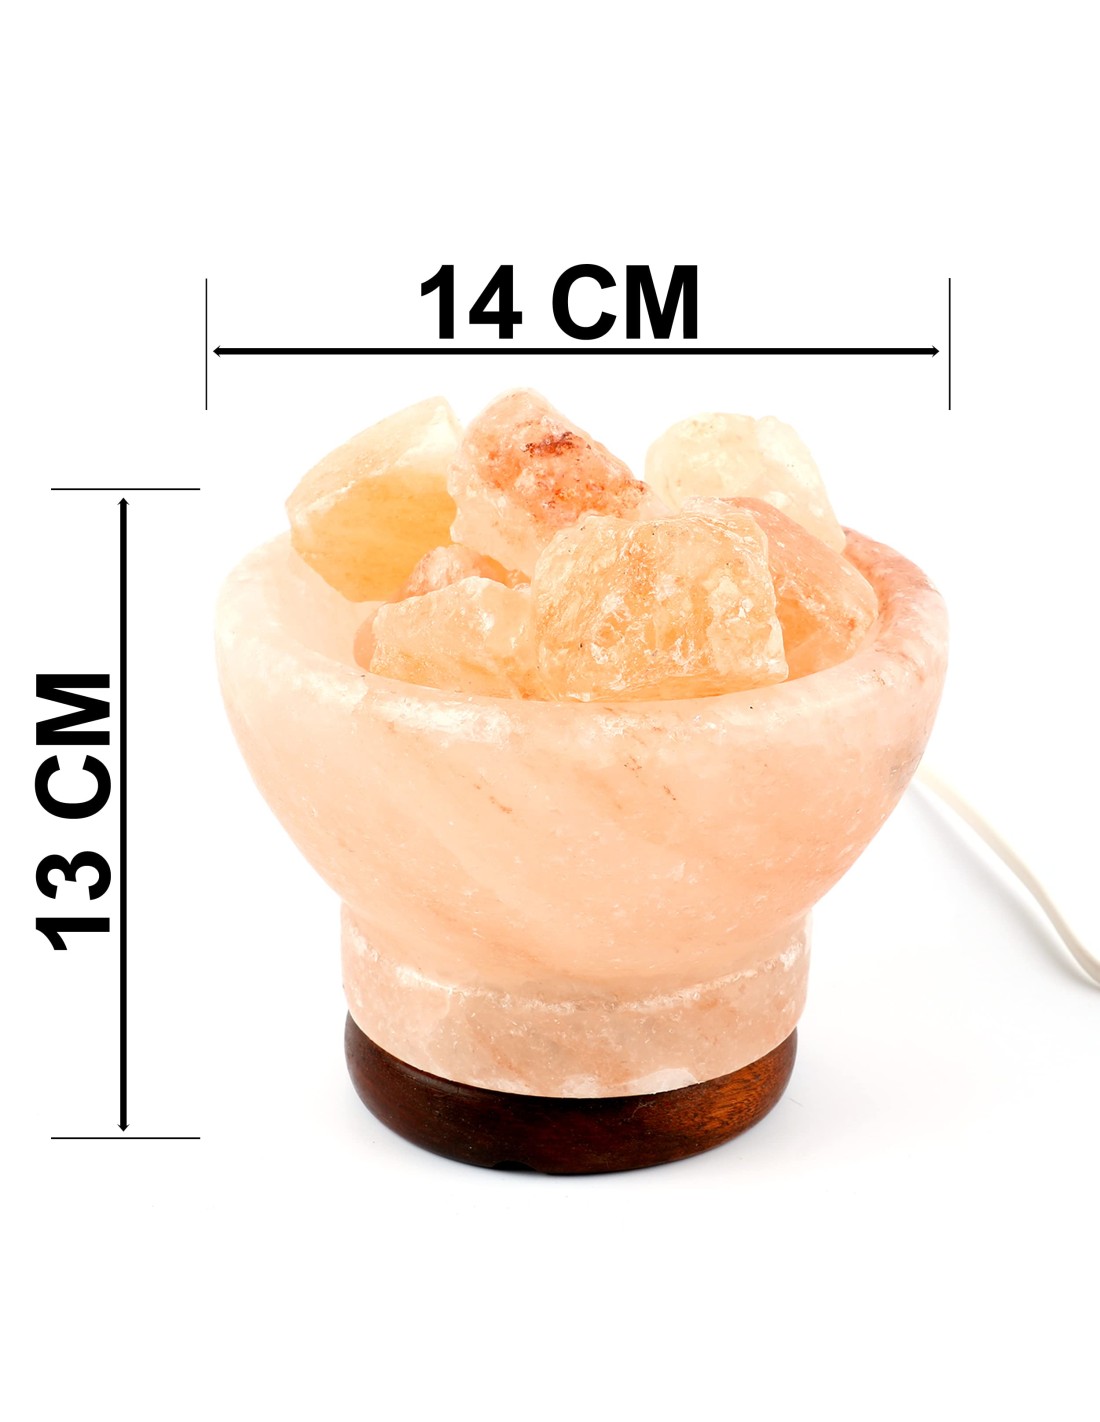 Lámpara de sal del himalaya natural Cuenco B 14 x 13cm + 1 bombilla de led  de repuesto enchufe europeo